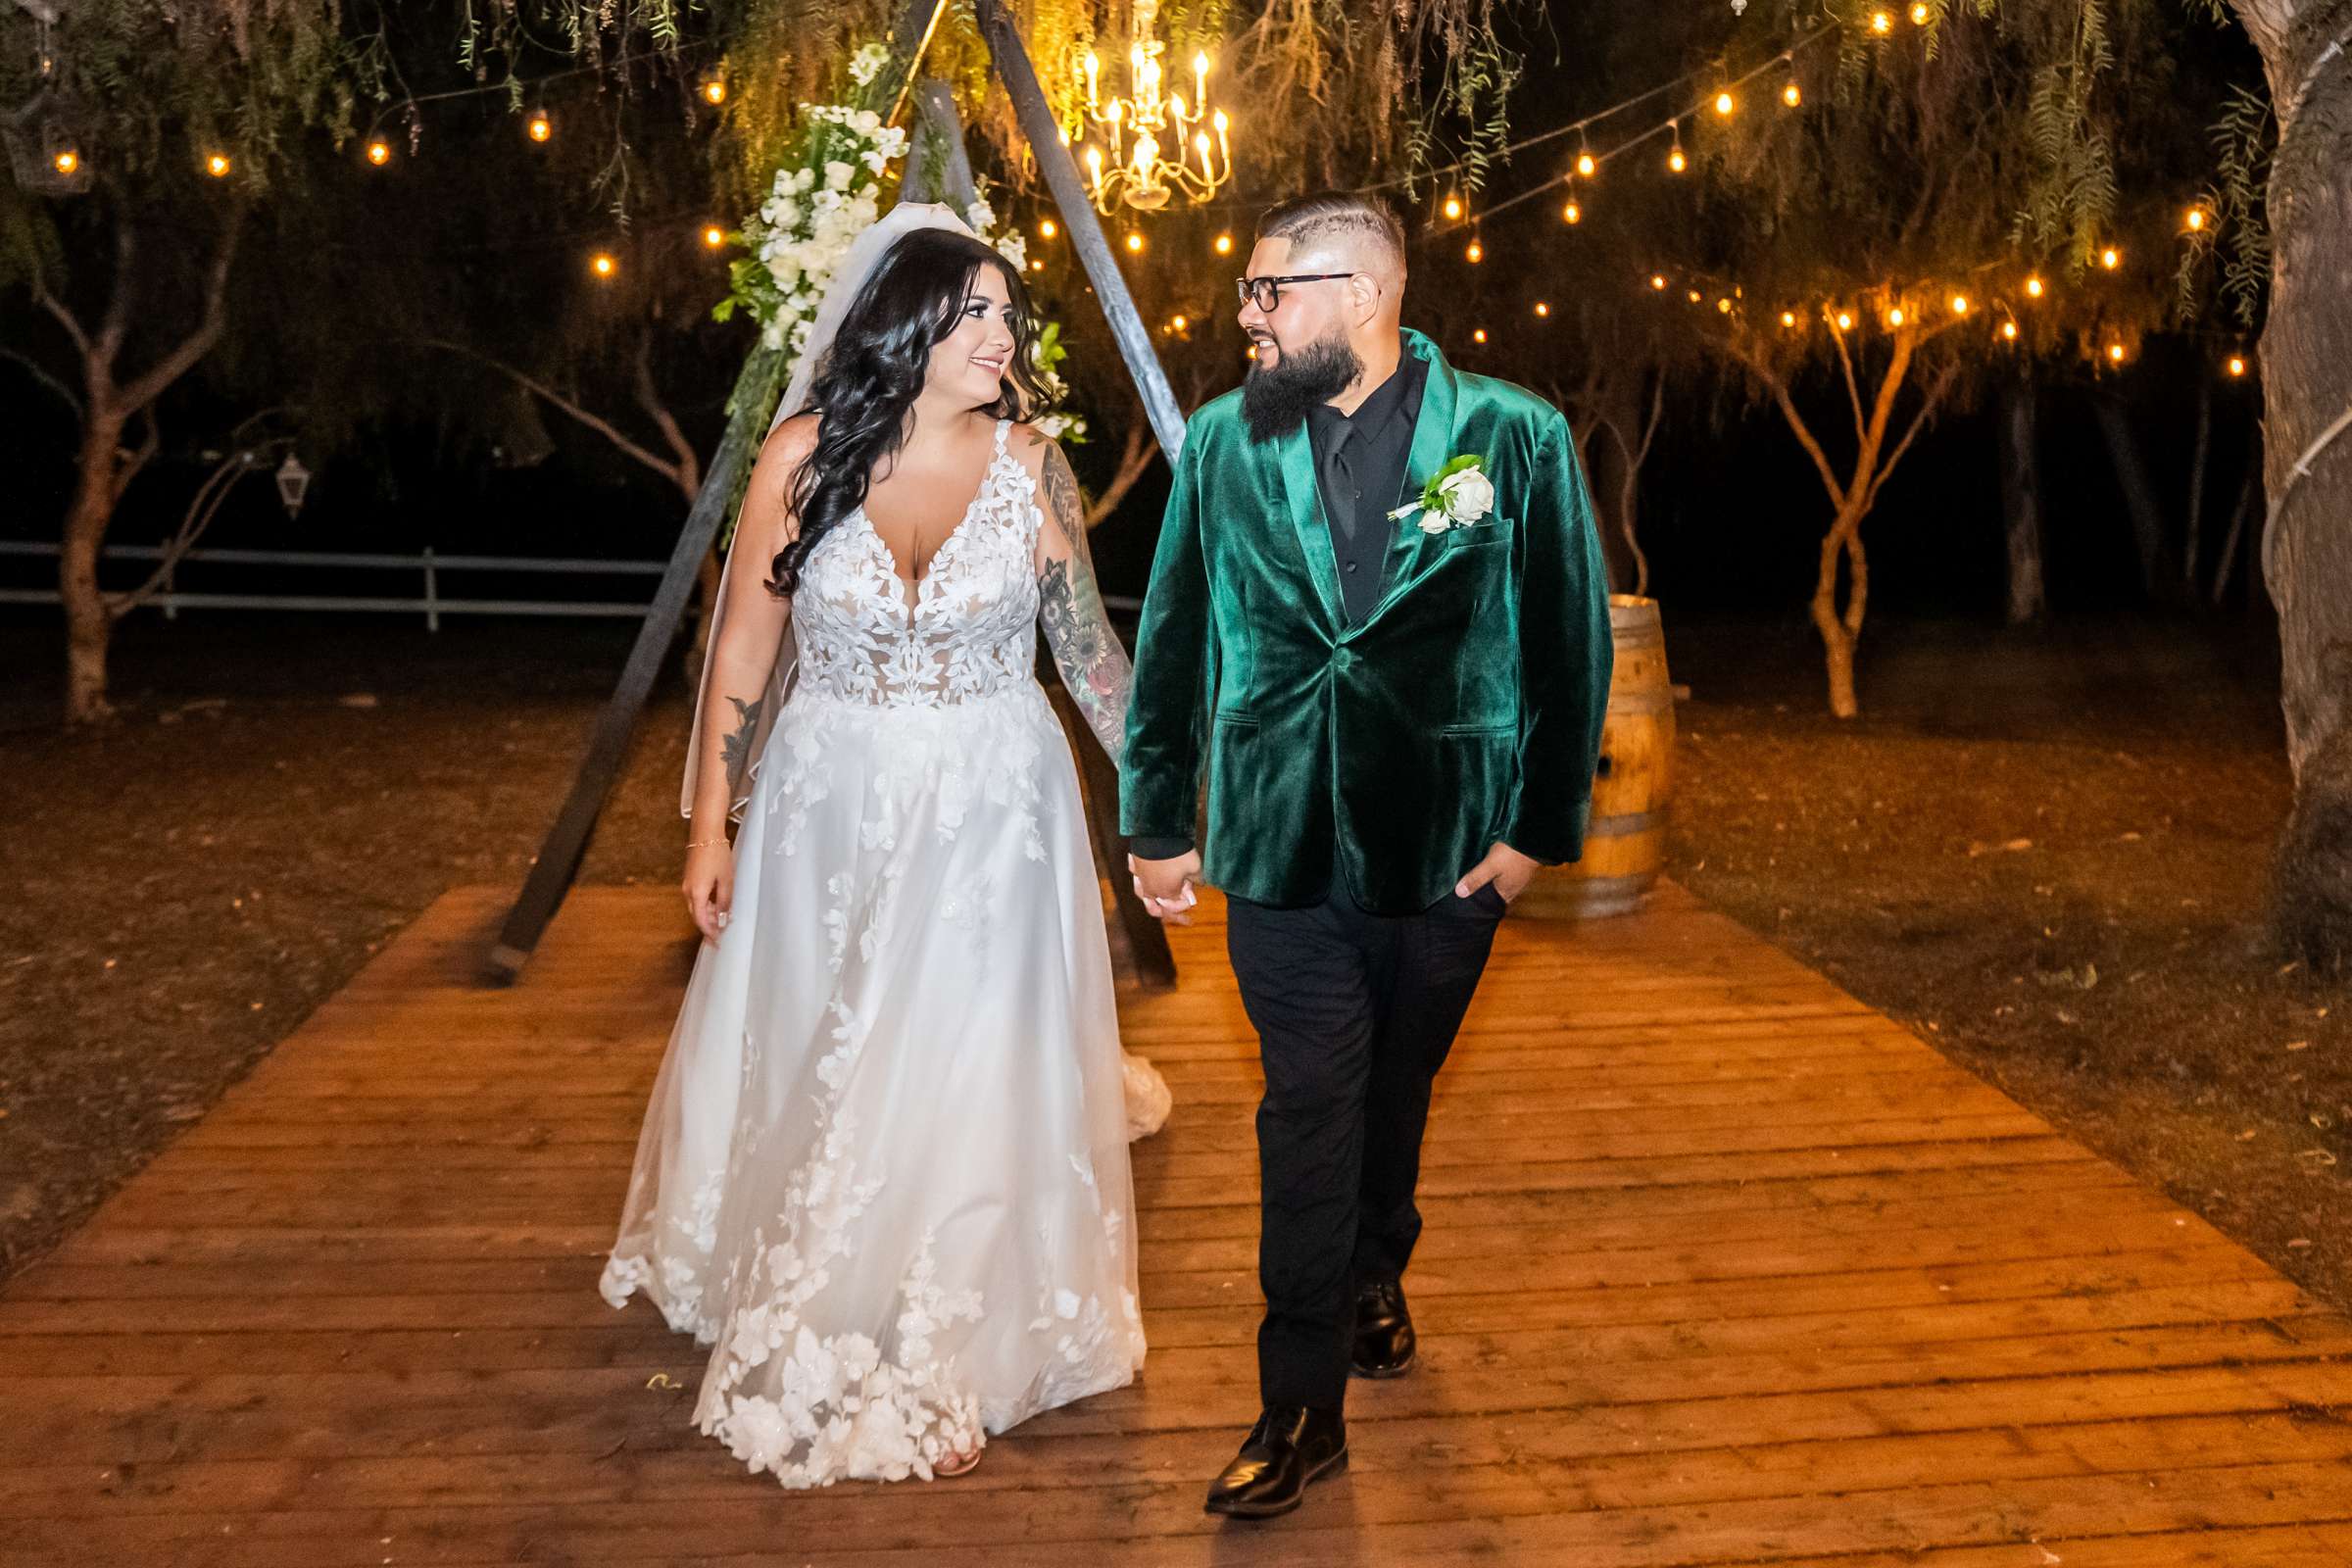 La Hacienda Wedding, Ashley and Alvaro Wedding Photo #17 by True Photography